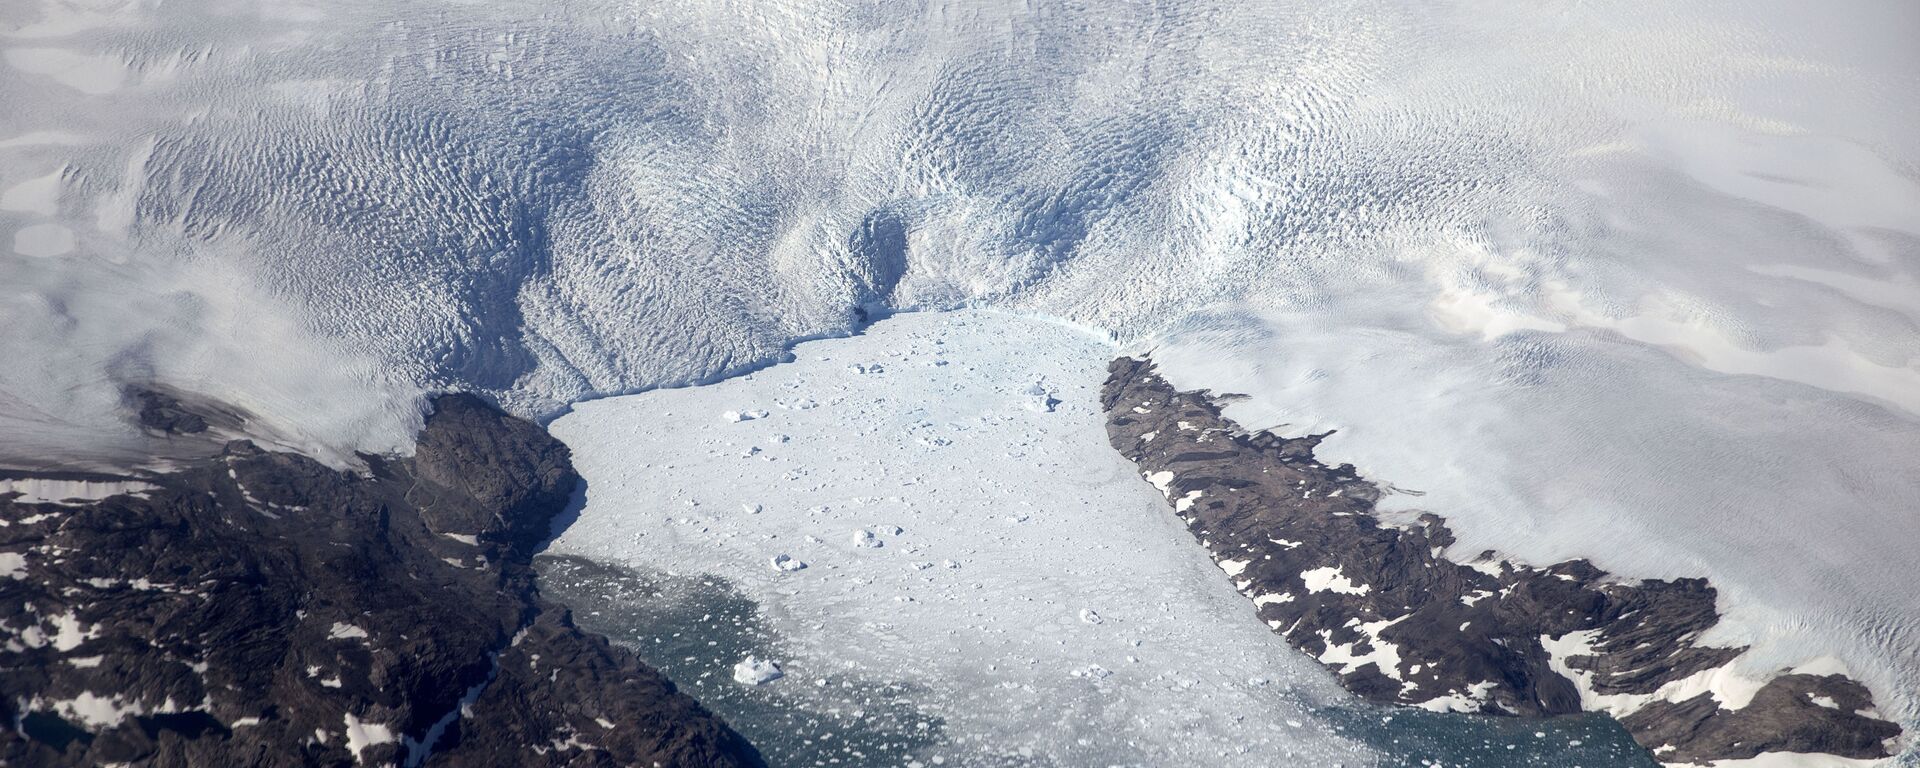 Sông băng tan chảy ở Greenland - Sputnik Việt Nam, 1920, 19.05.2021